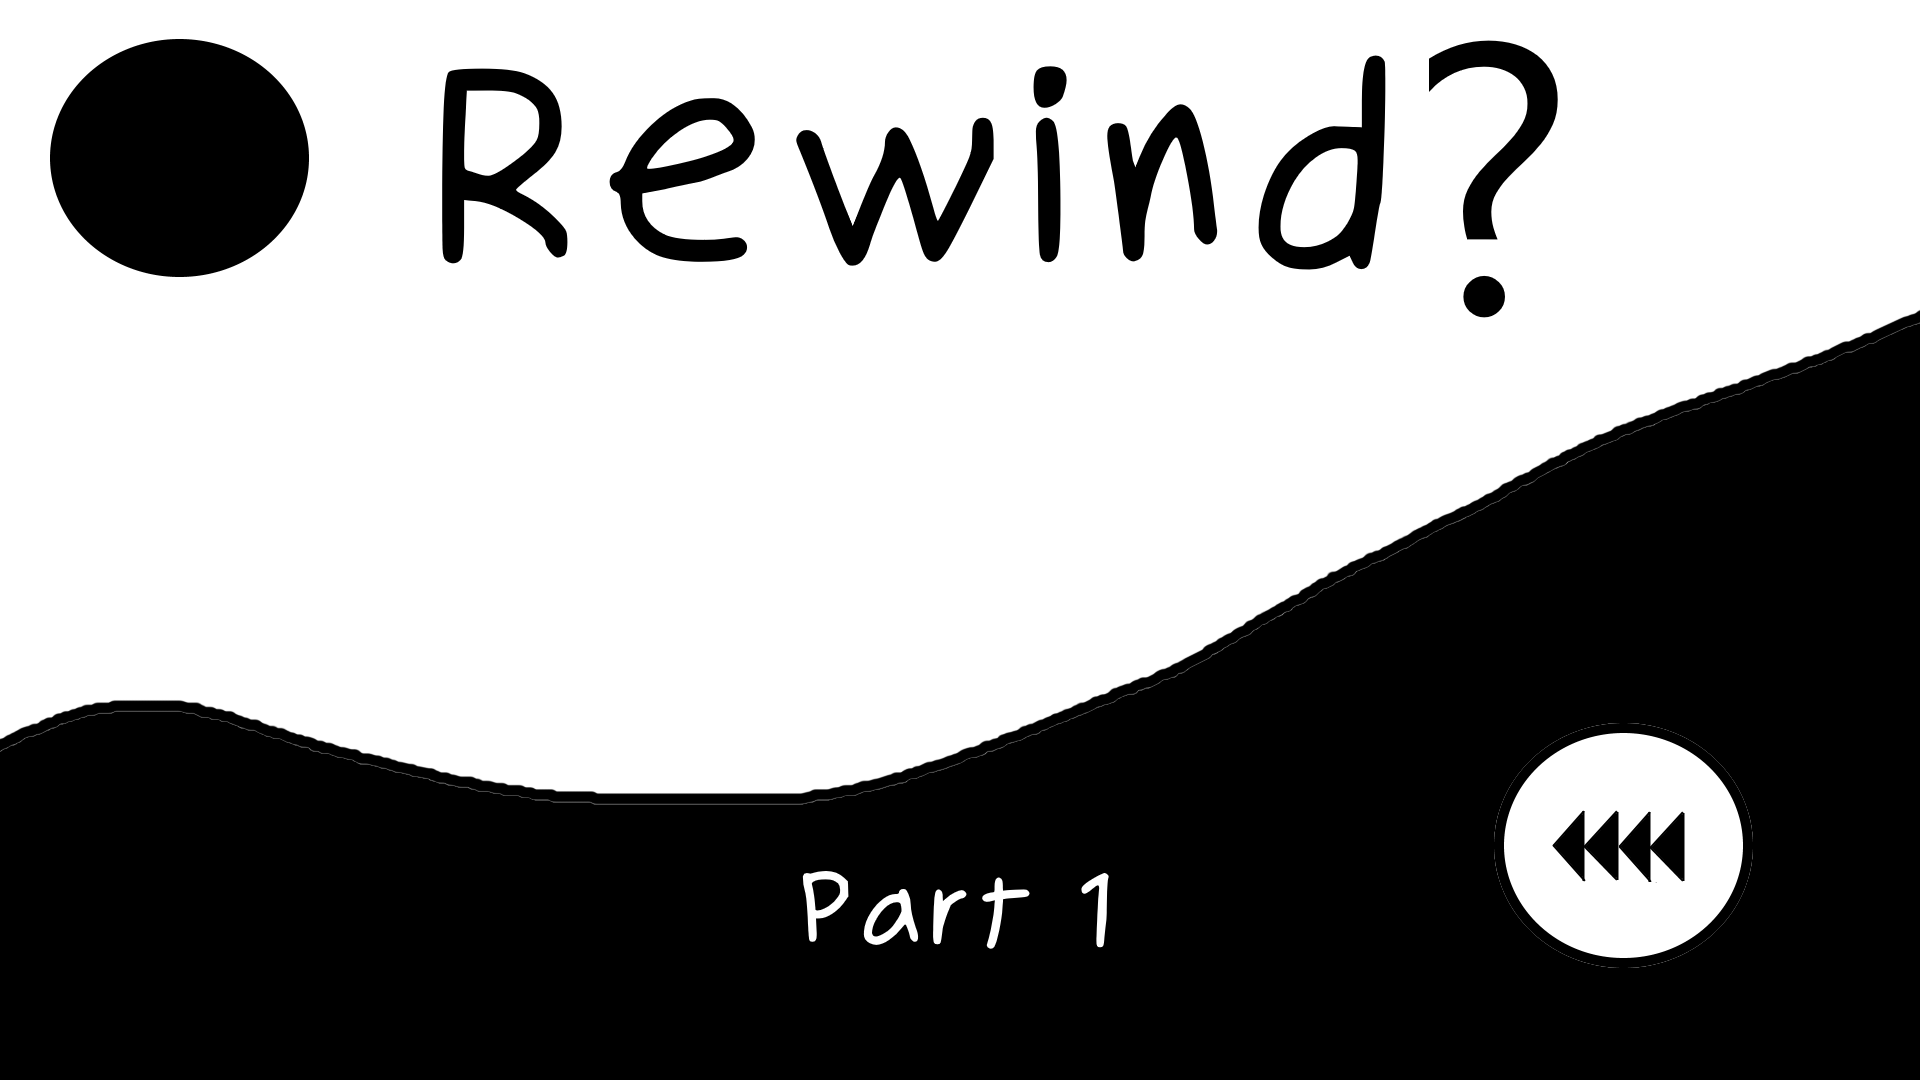 Rewind?